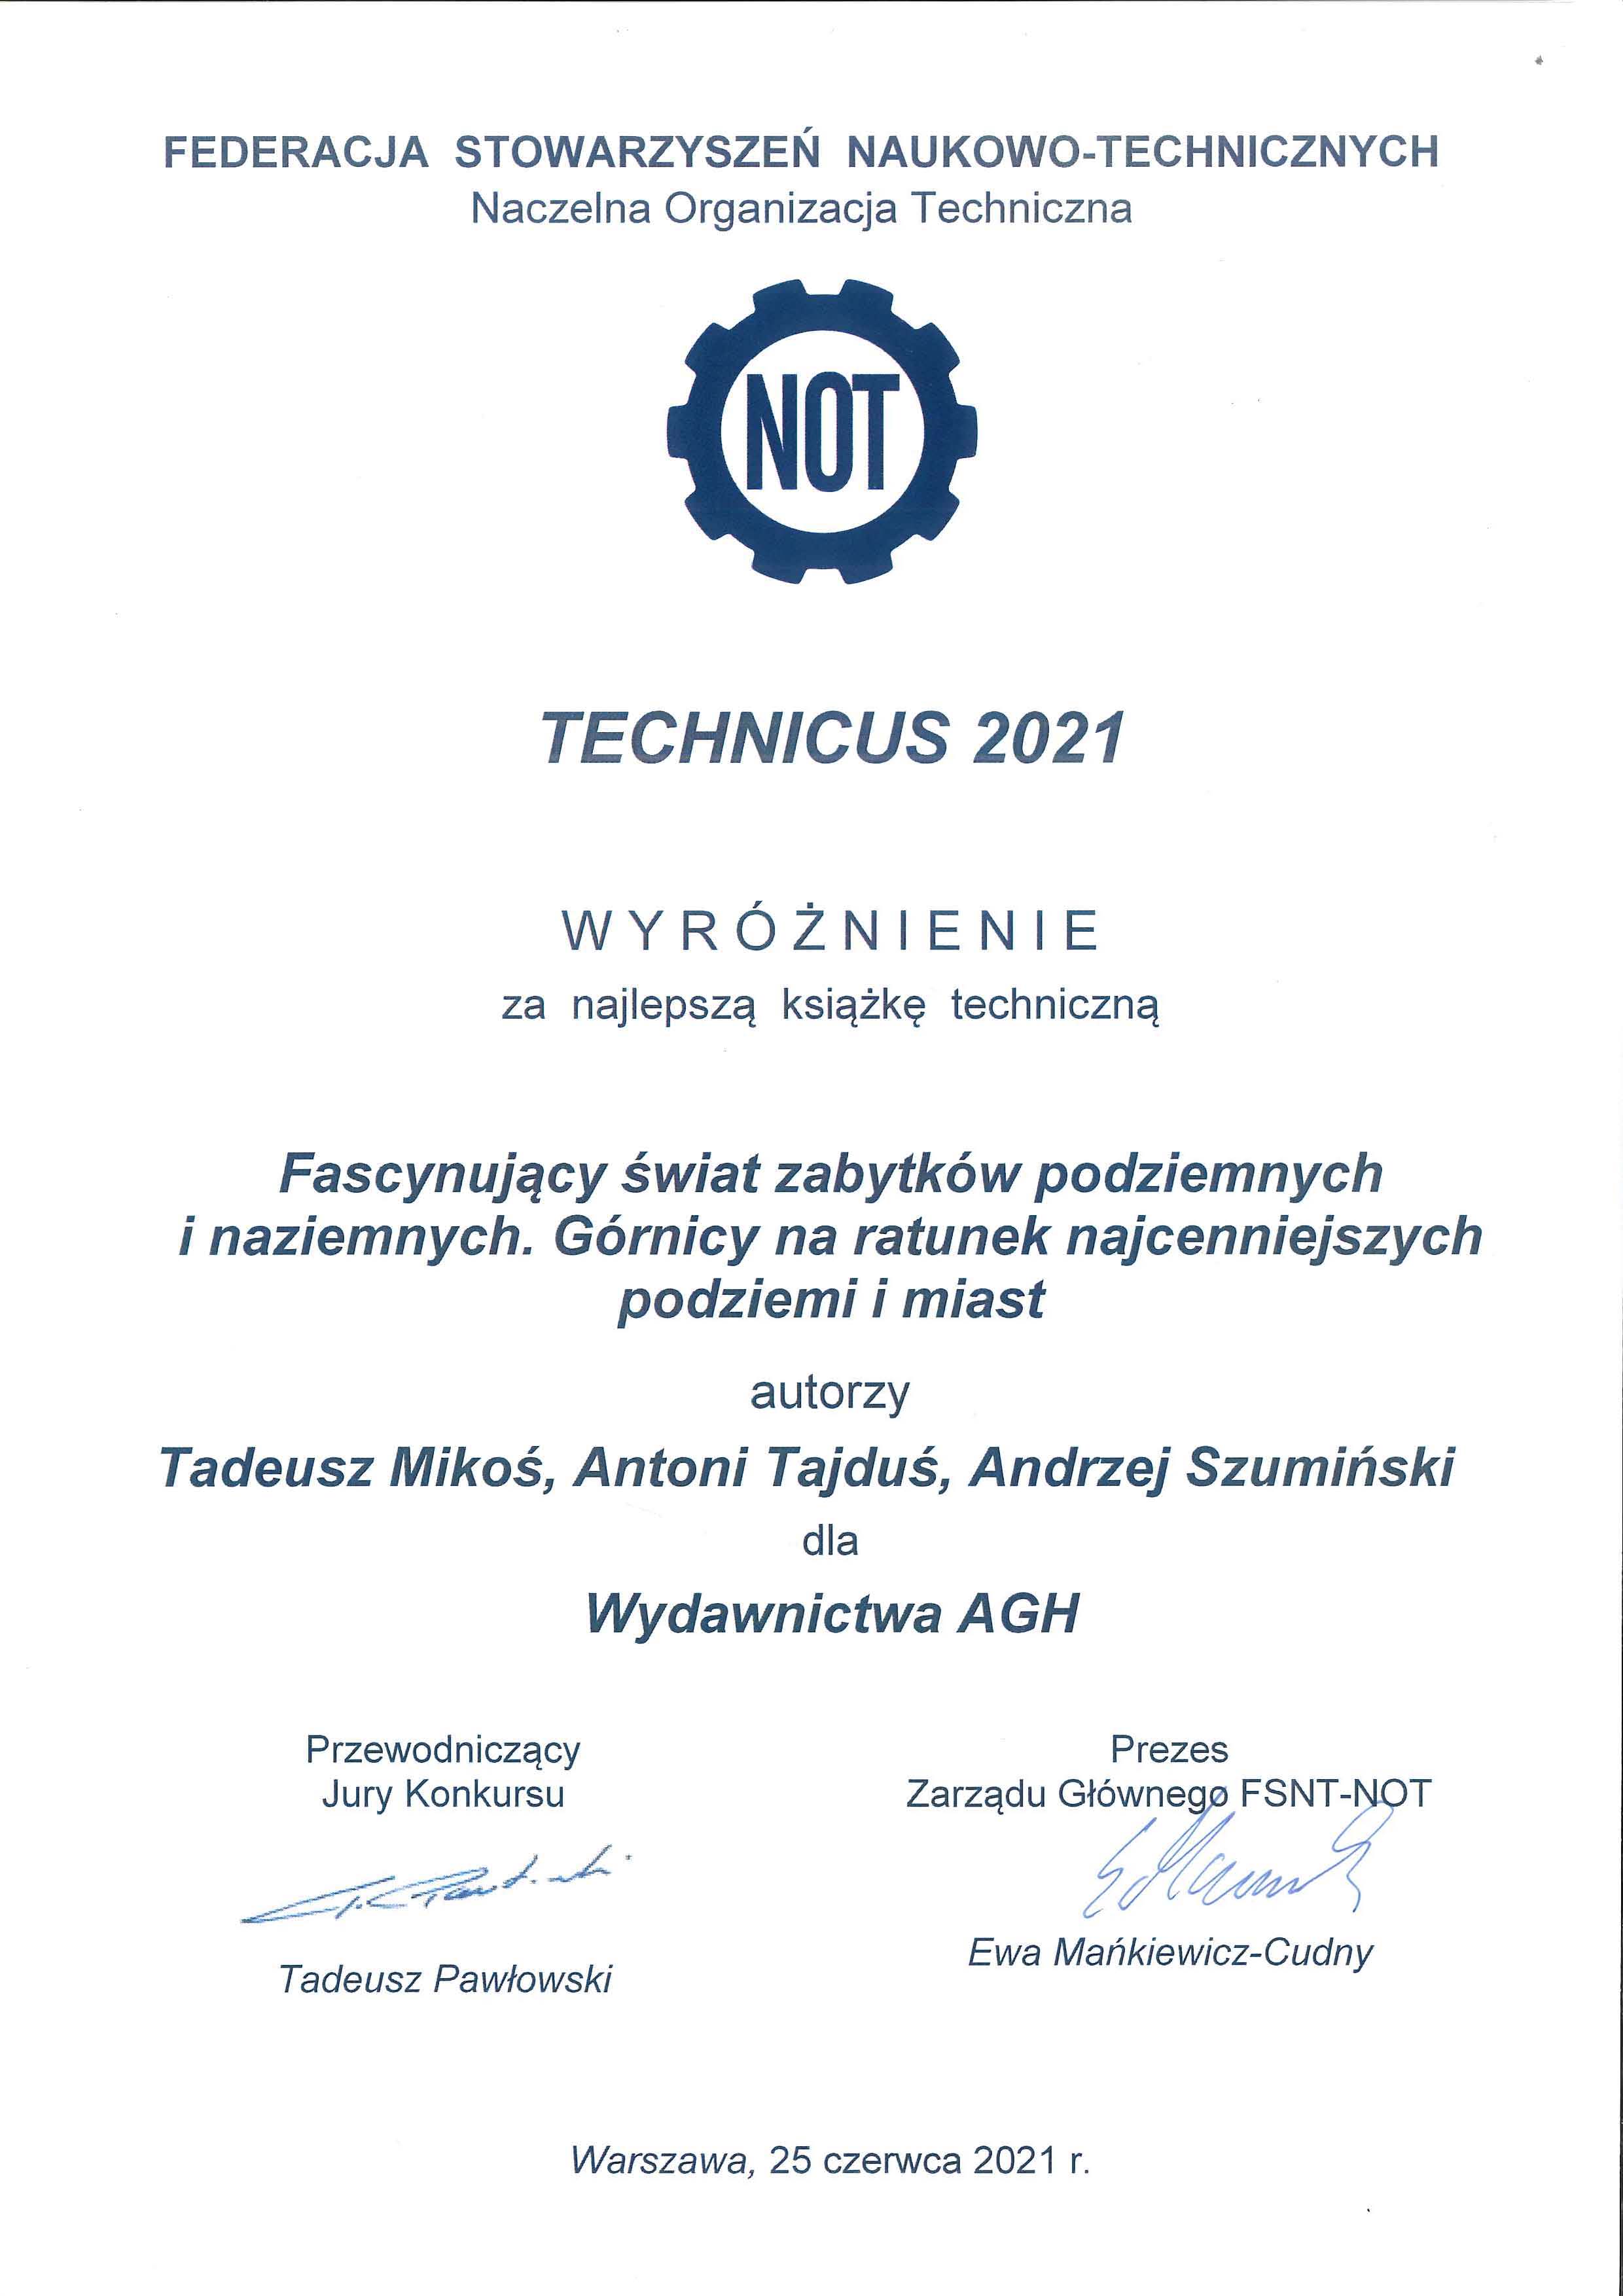 TECHNICUS 2021 - wyróżnienie dla Wydawnictw AGH